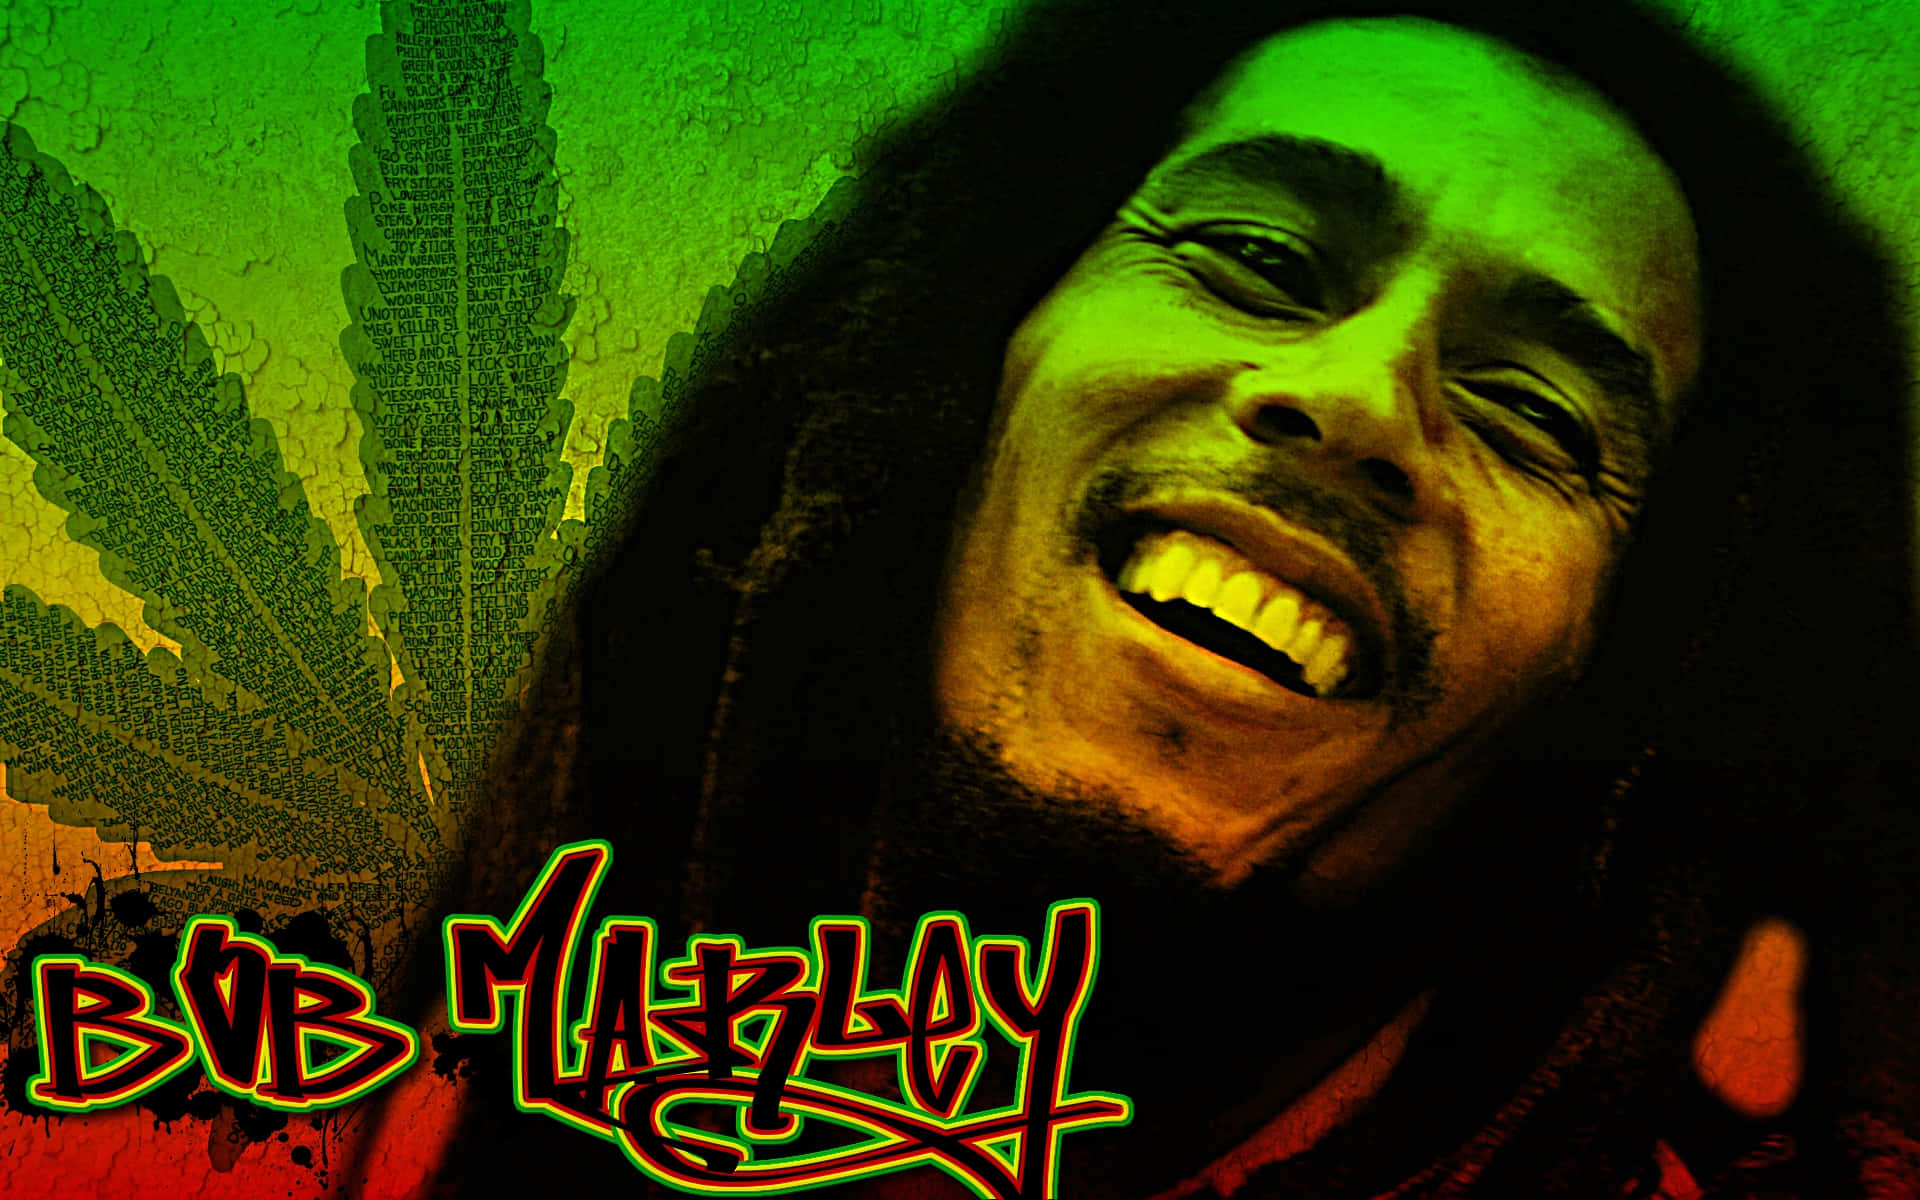 Bob Marley Wallpapers - Bob Marley Wallpapers